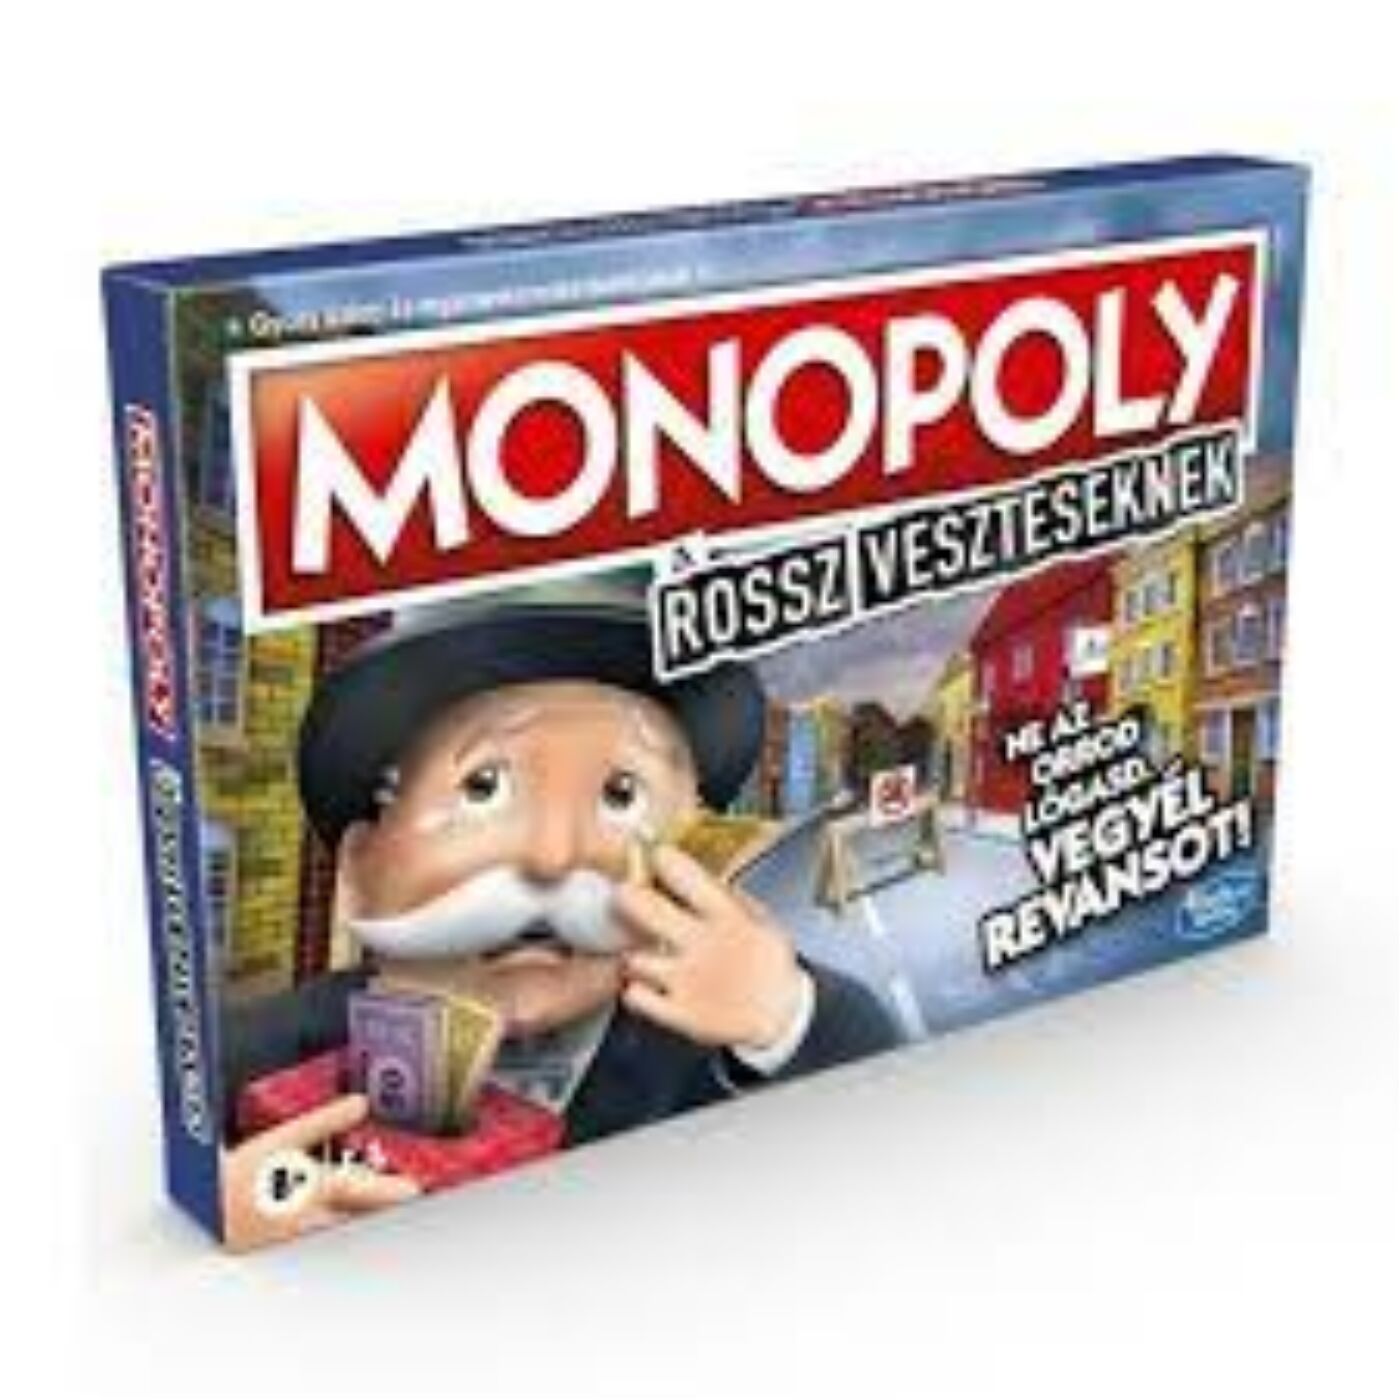 Monopoly A rossz veszteseknek